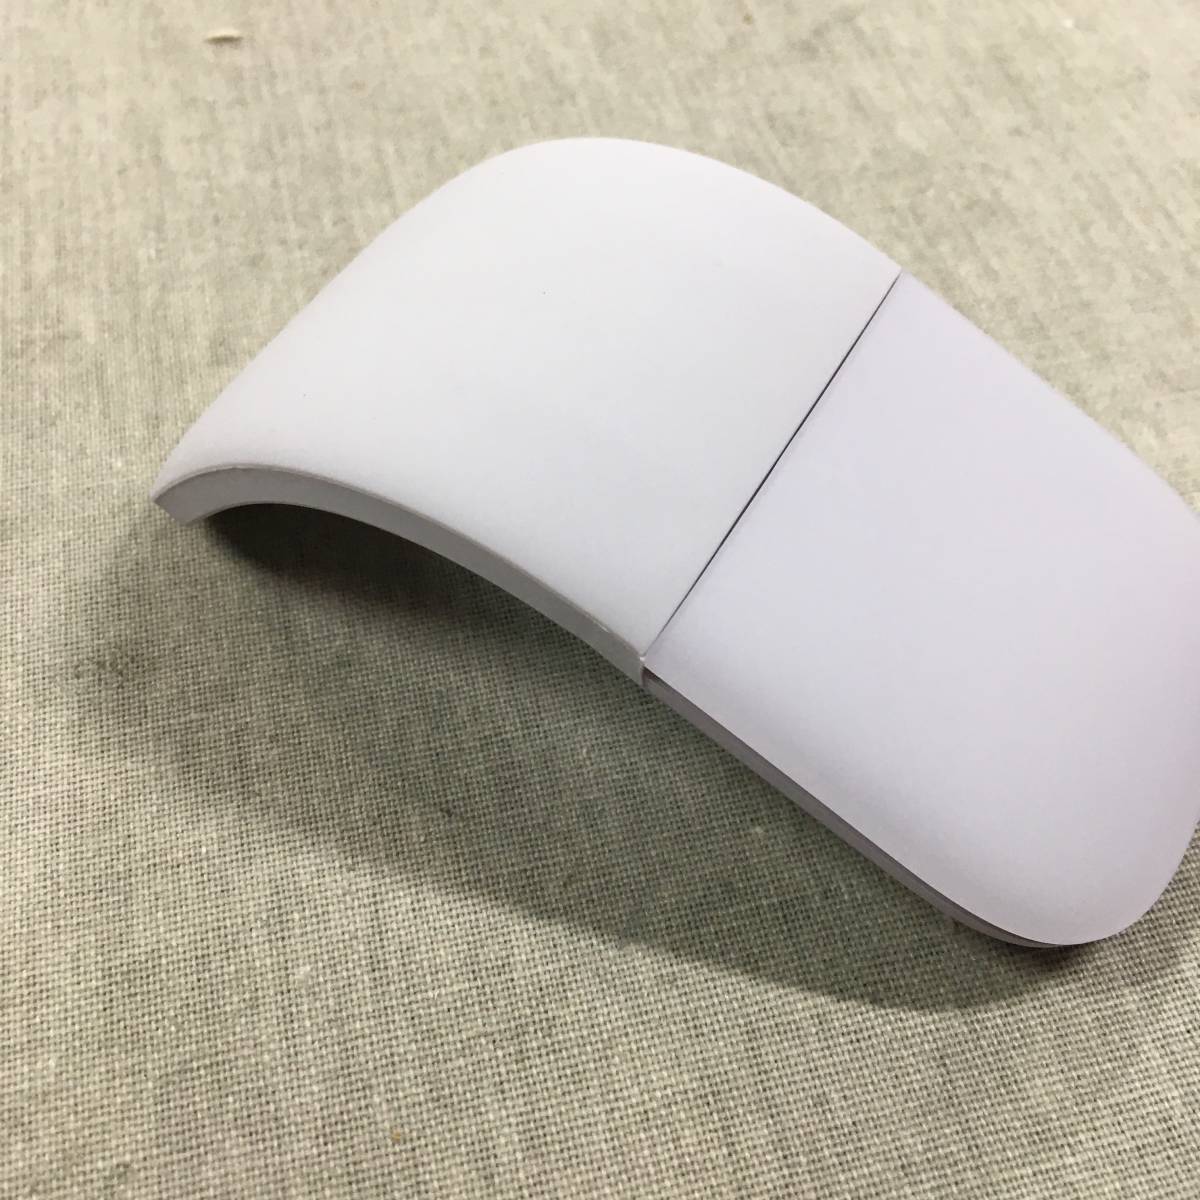 現状品 マイクロソフト マウス Bluetooth対応/薄型/小型 Arc Mouse 131.3x55.1x14.2mm Lilac ELG-00020_画像4